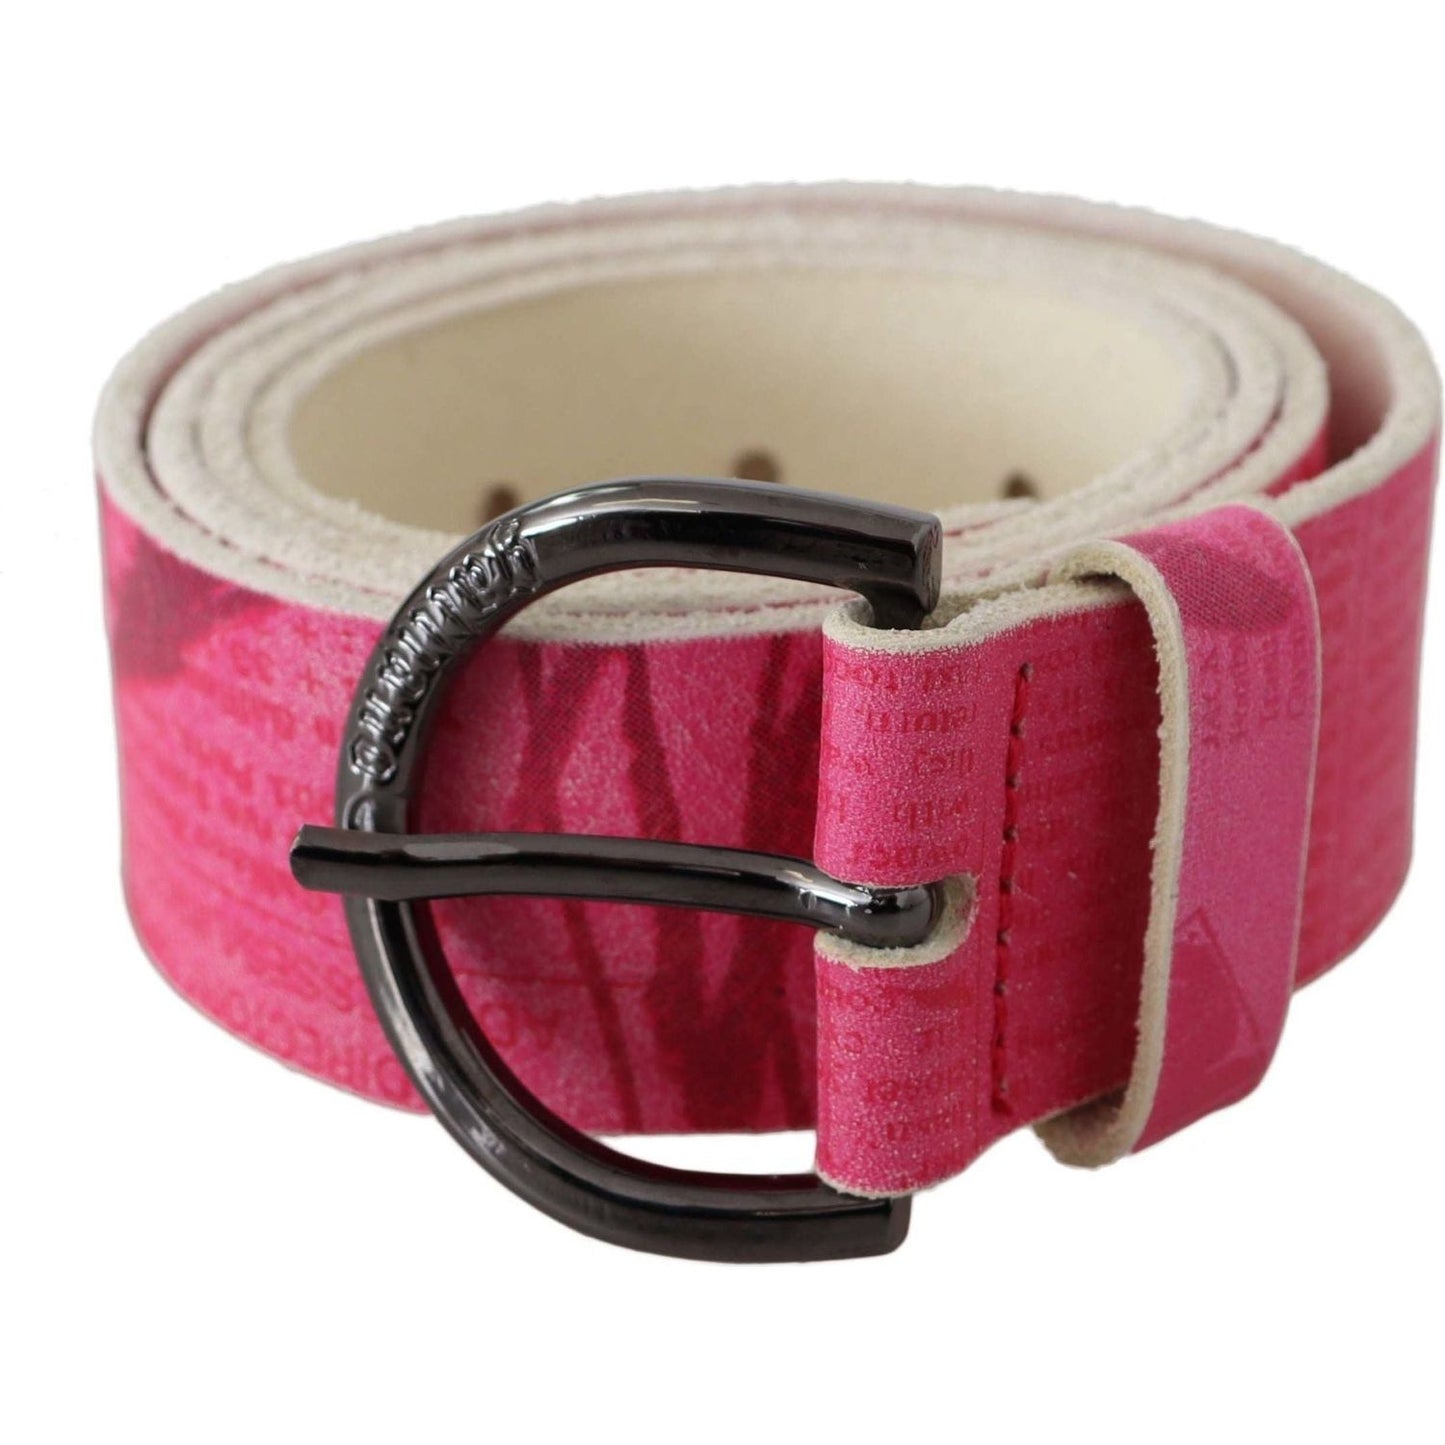 John Galliano Elegant Pink Leather Fashion Belt Belt pink-leather-letter-logo-design-round-buckle-belt